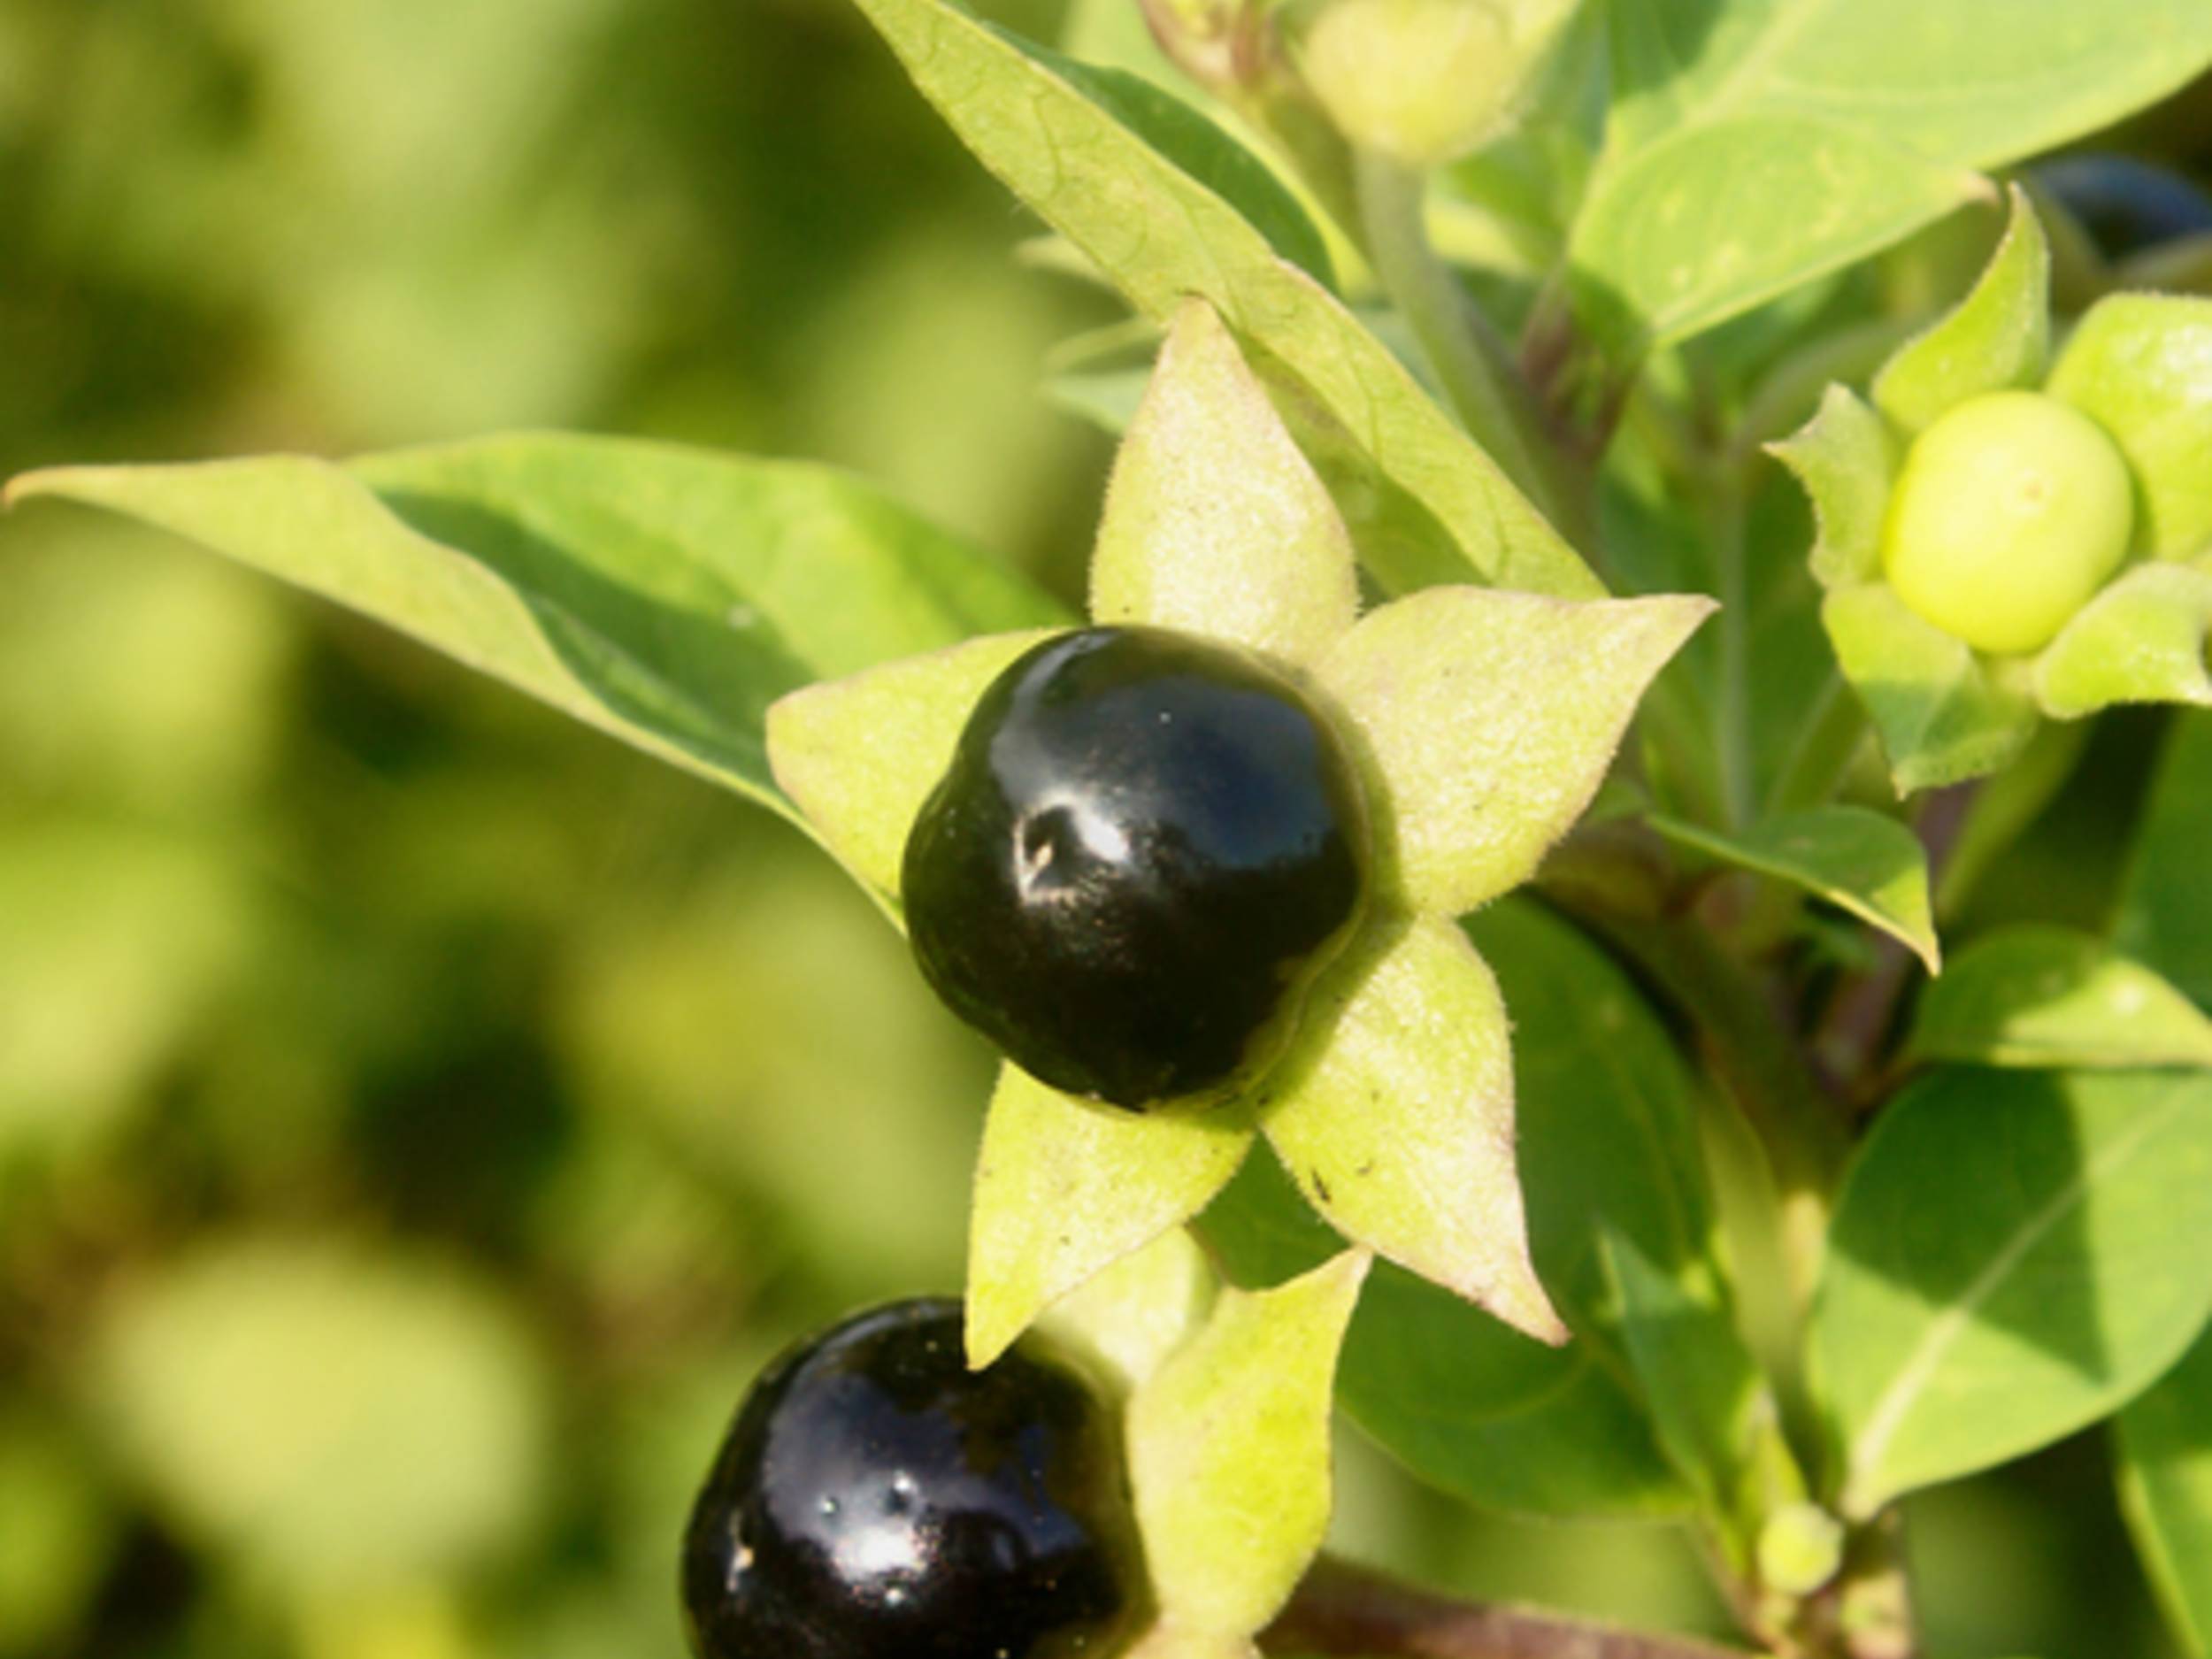 Belladonna Pflanze und schwarze Beere